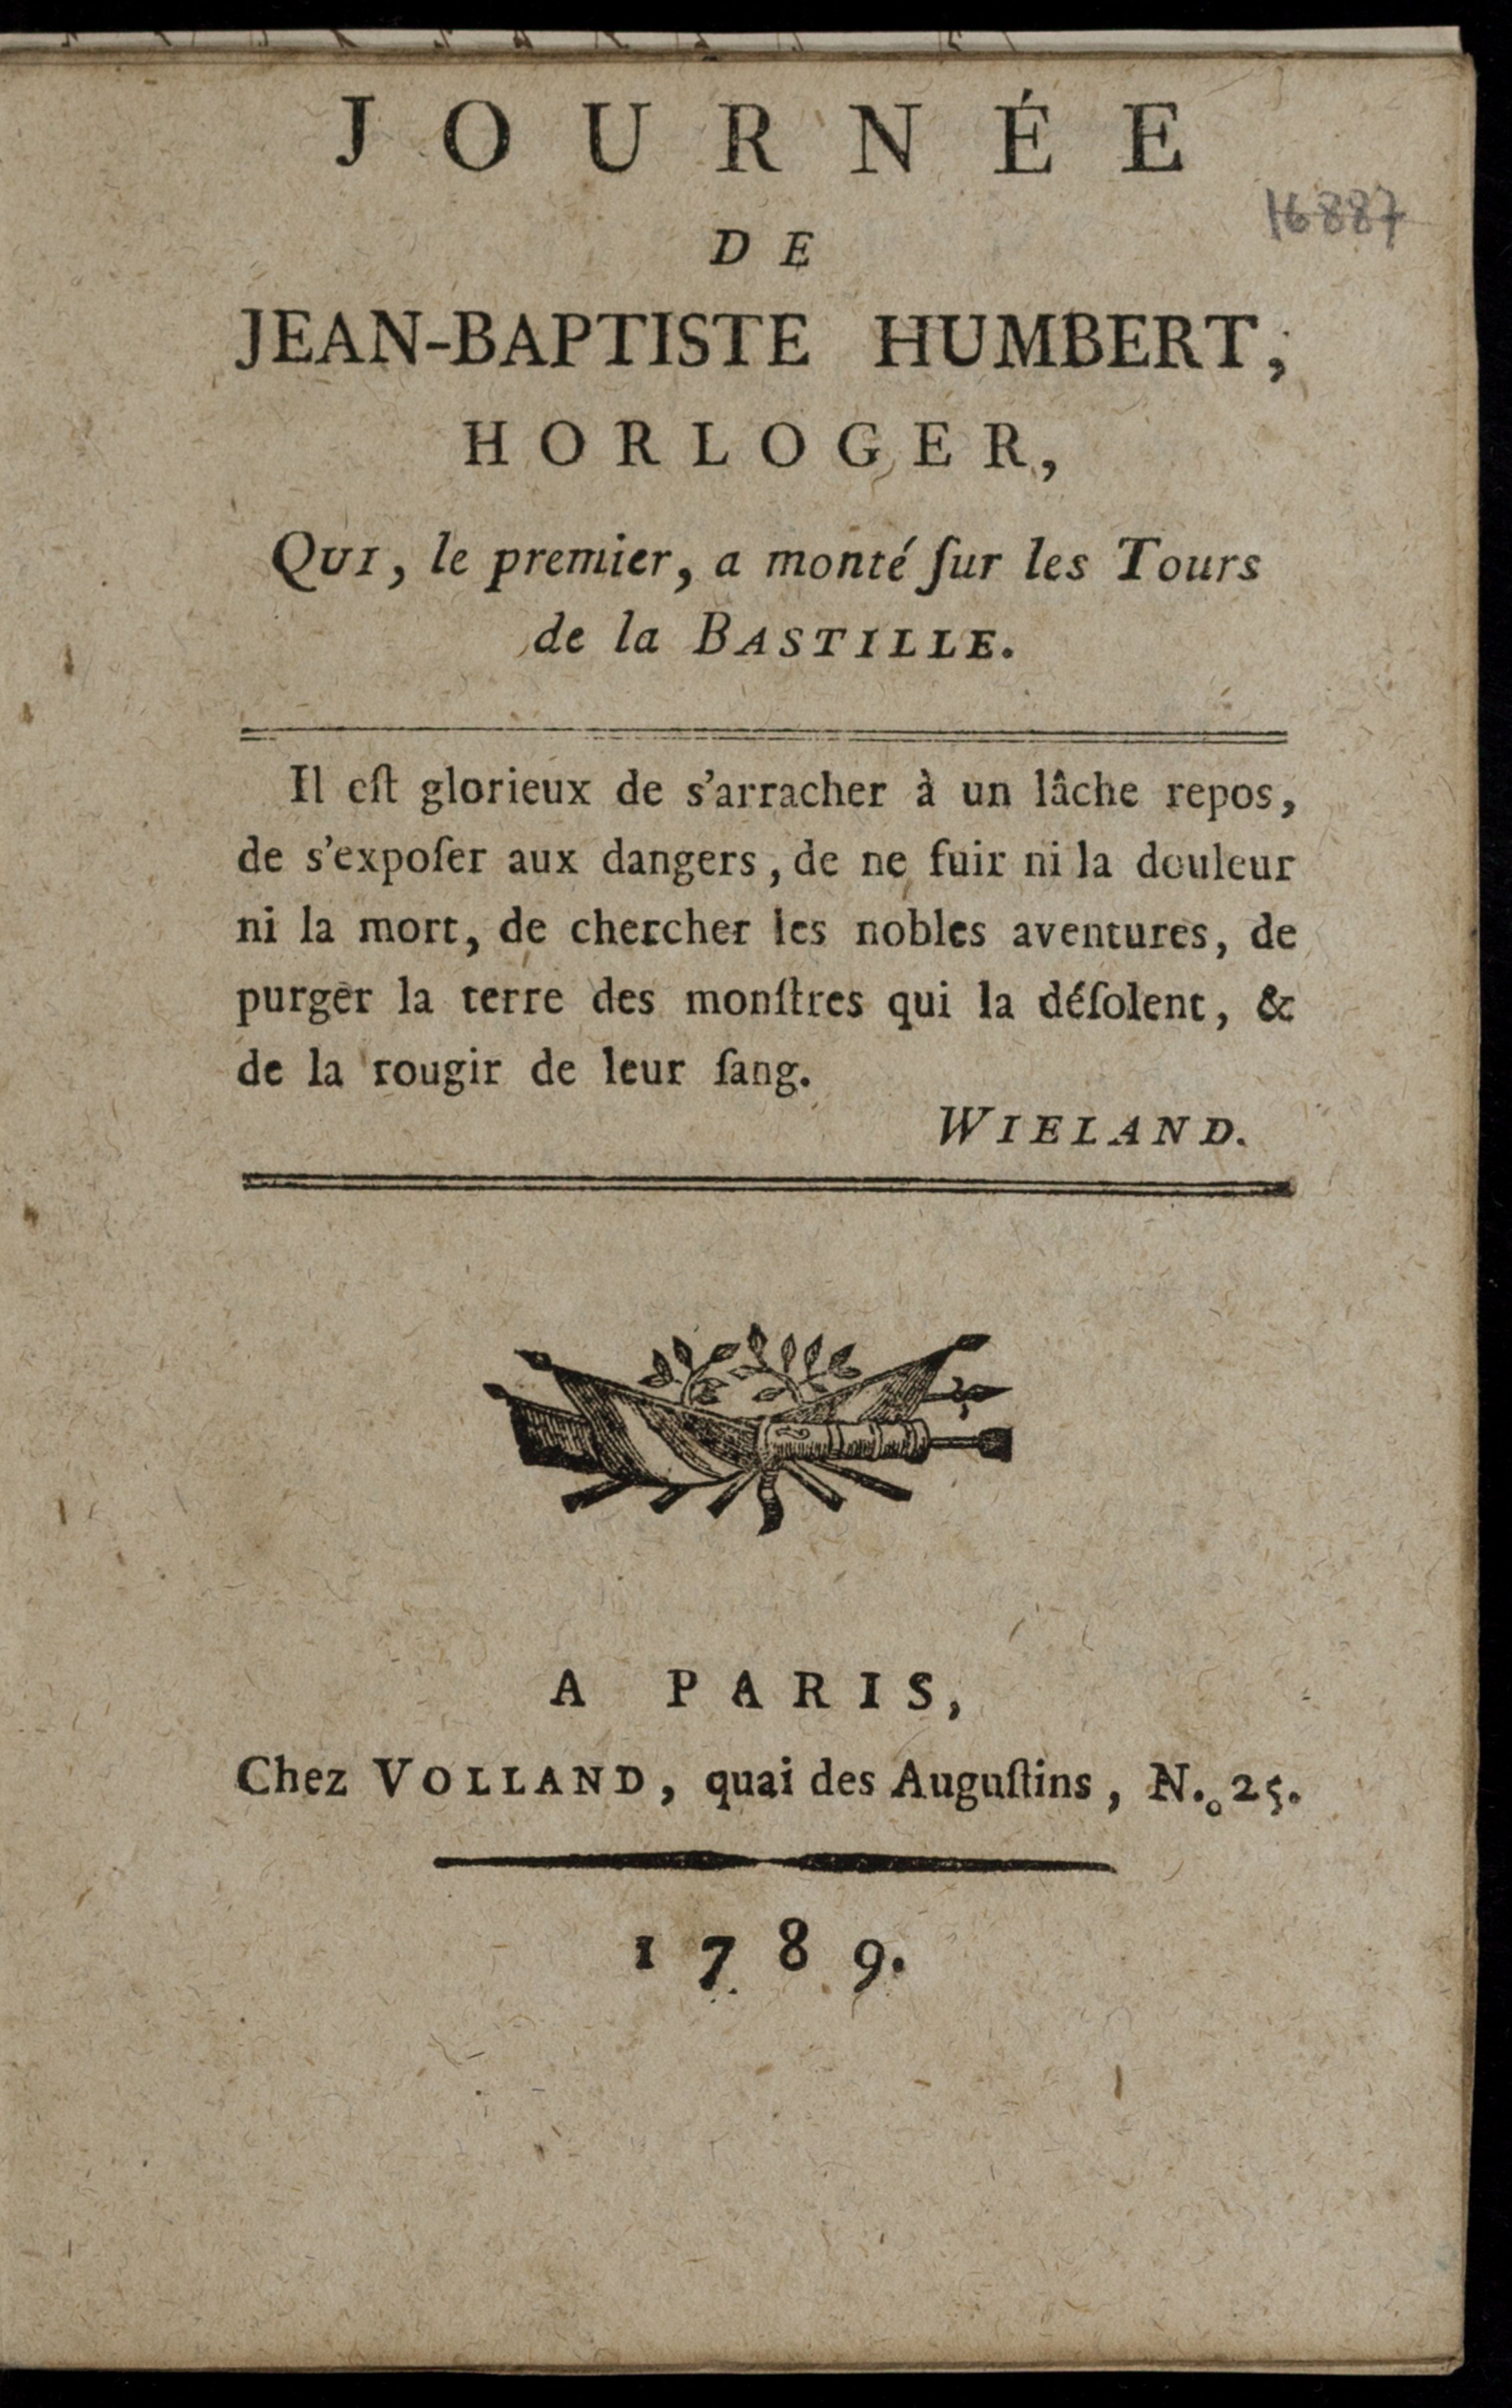 French Revolution Pamphlet